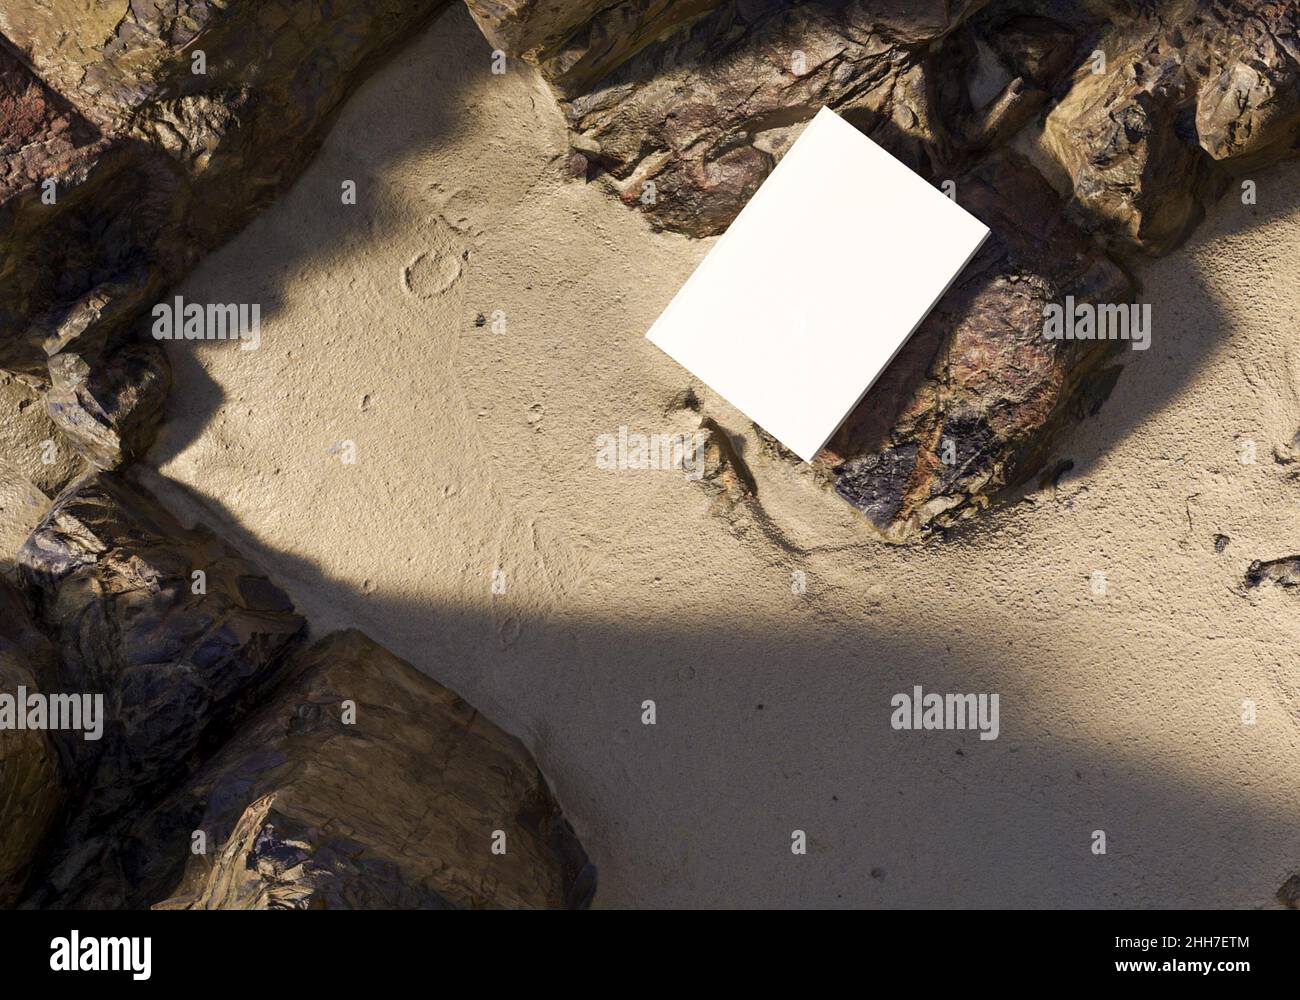 Modèle de livre vierge placé sur des rochers dans le sable, maquette de bloc-notes, maquette sur fond de nature 01 Banque D'Images